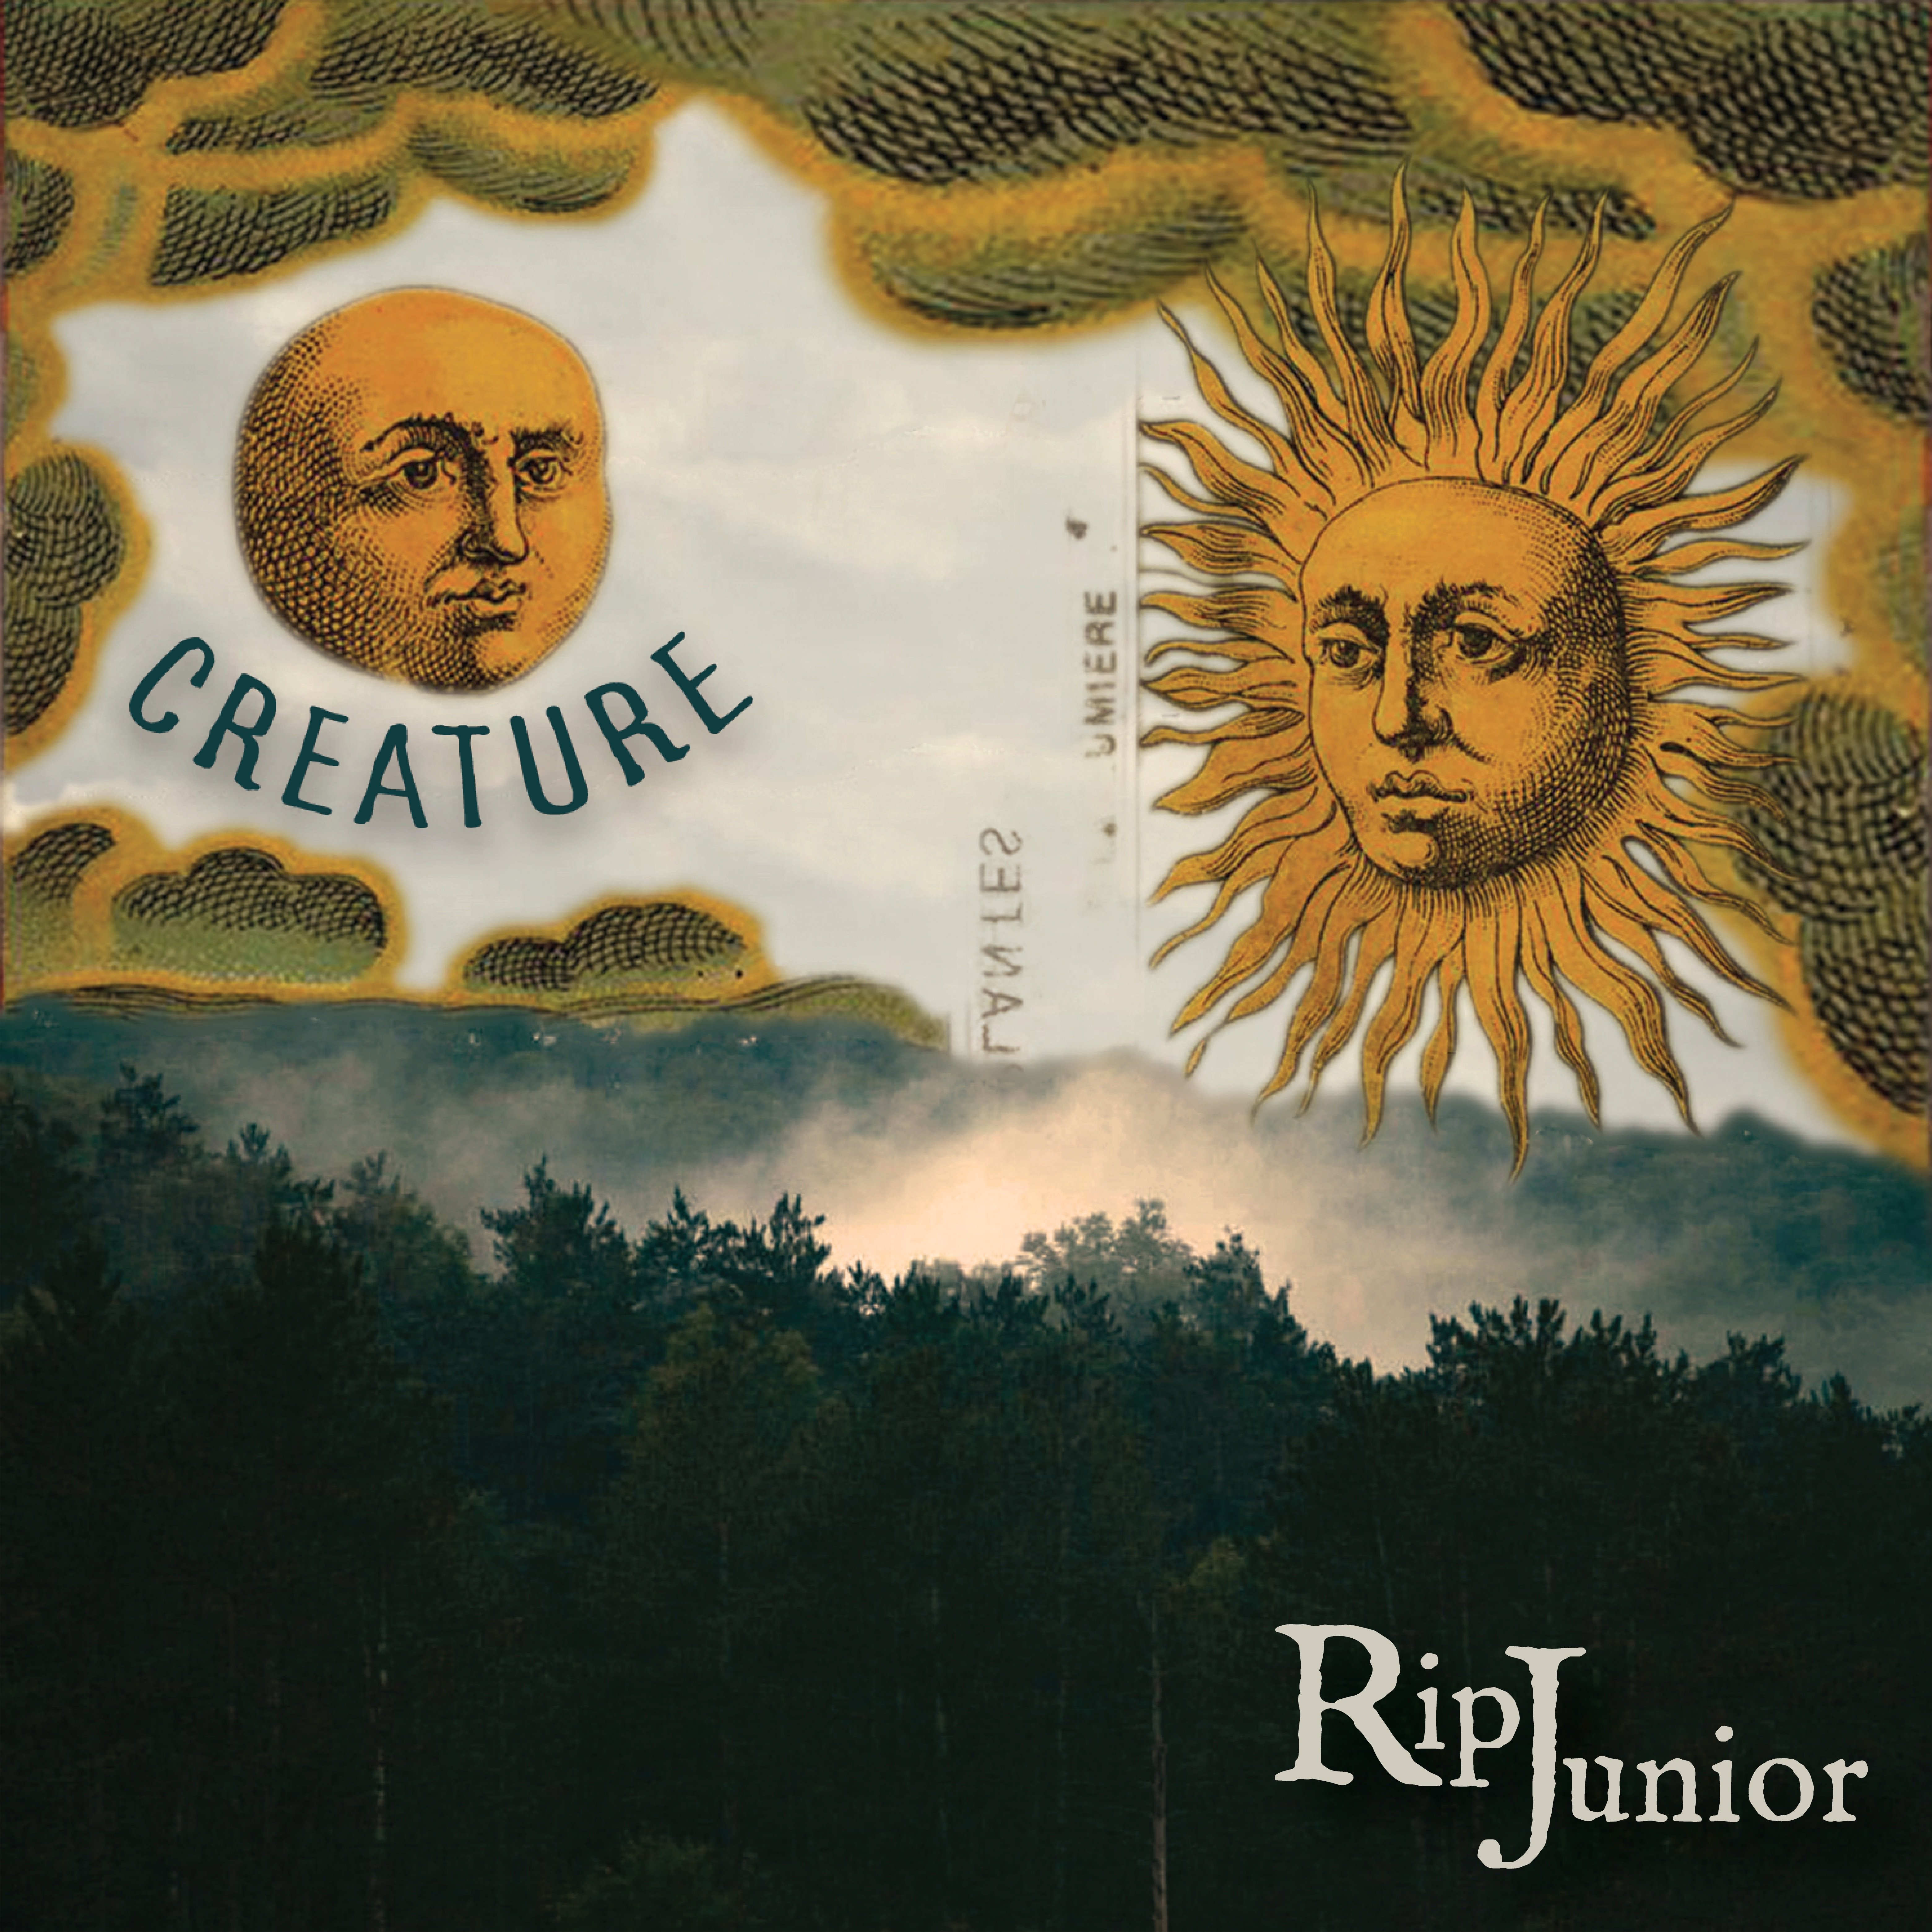 Rip Junior – “Creature”